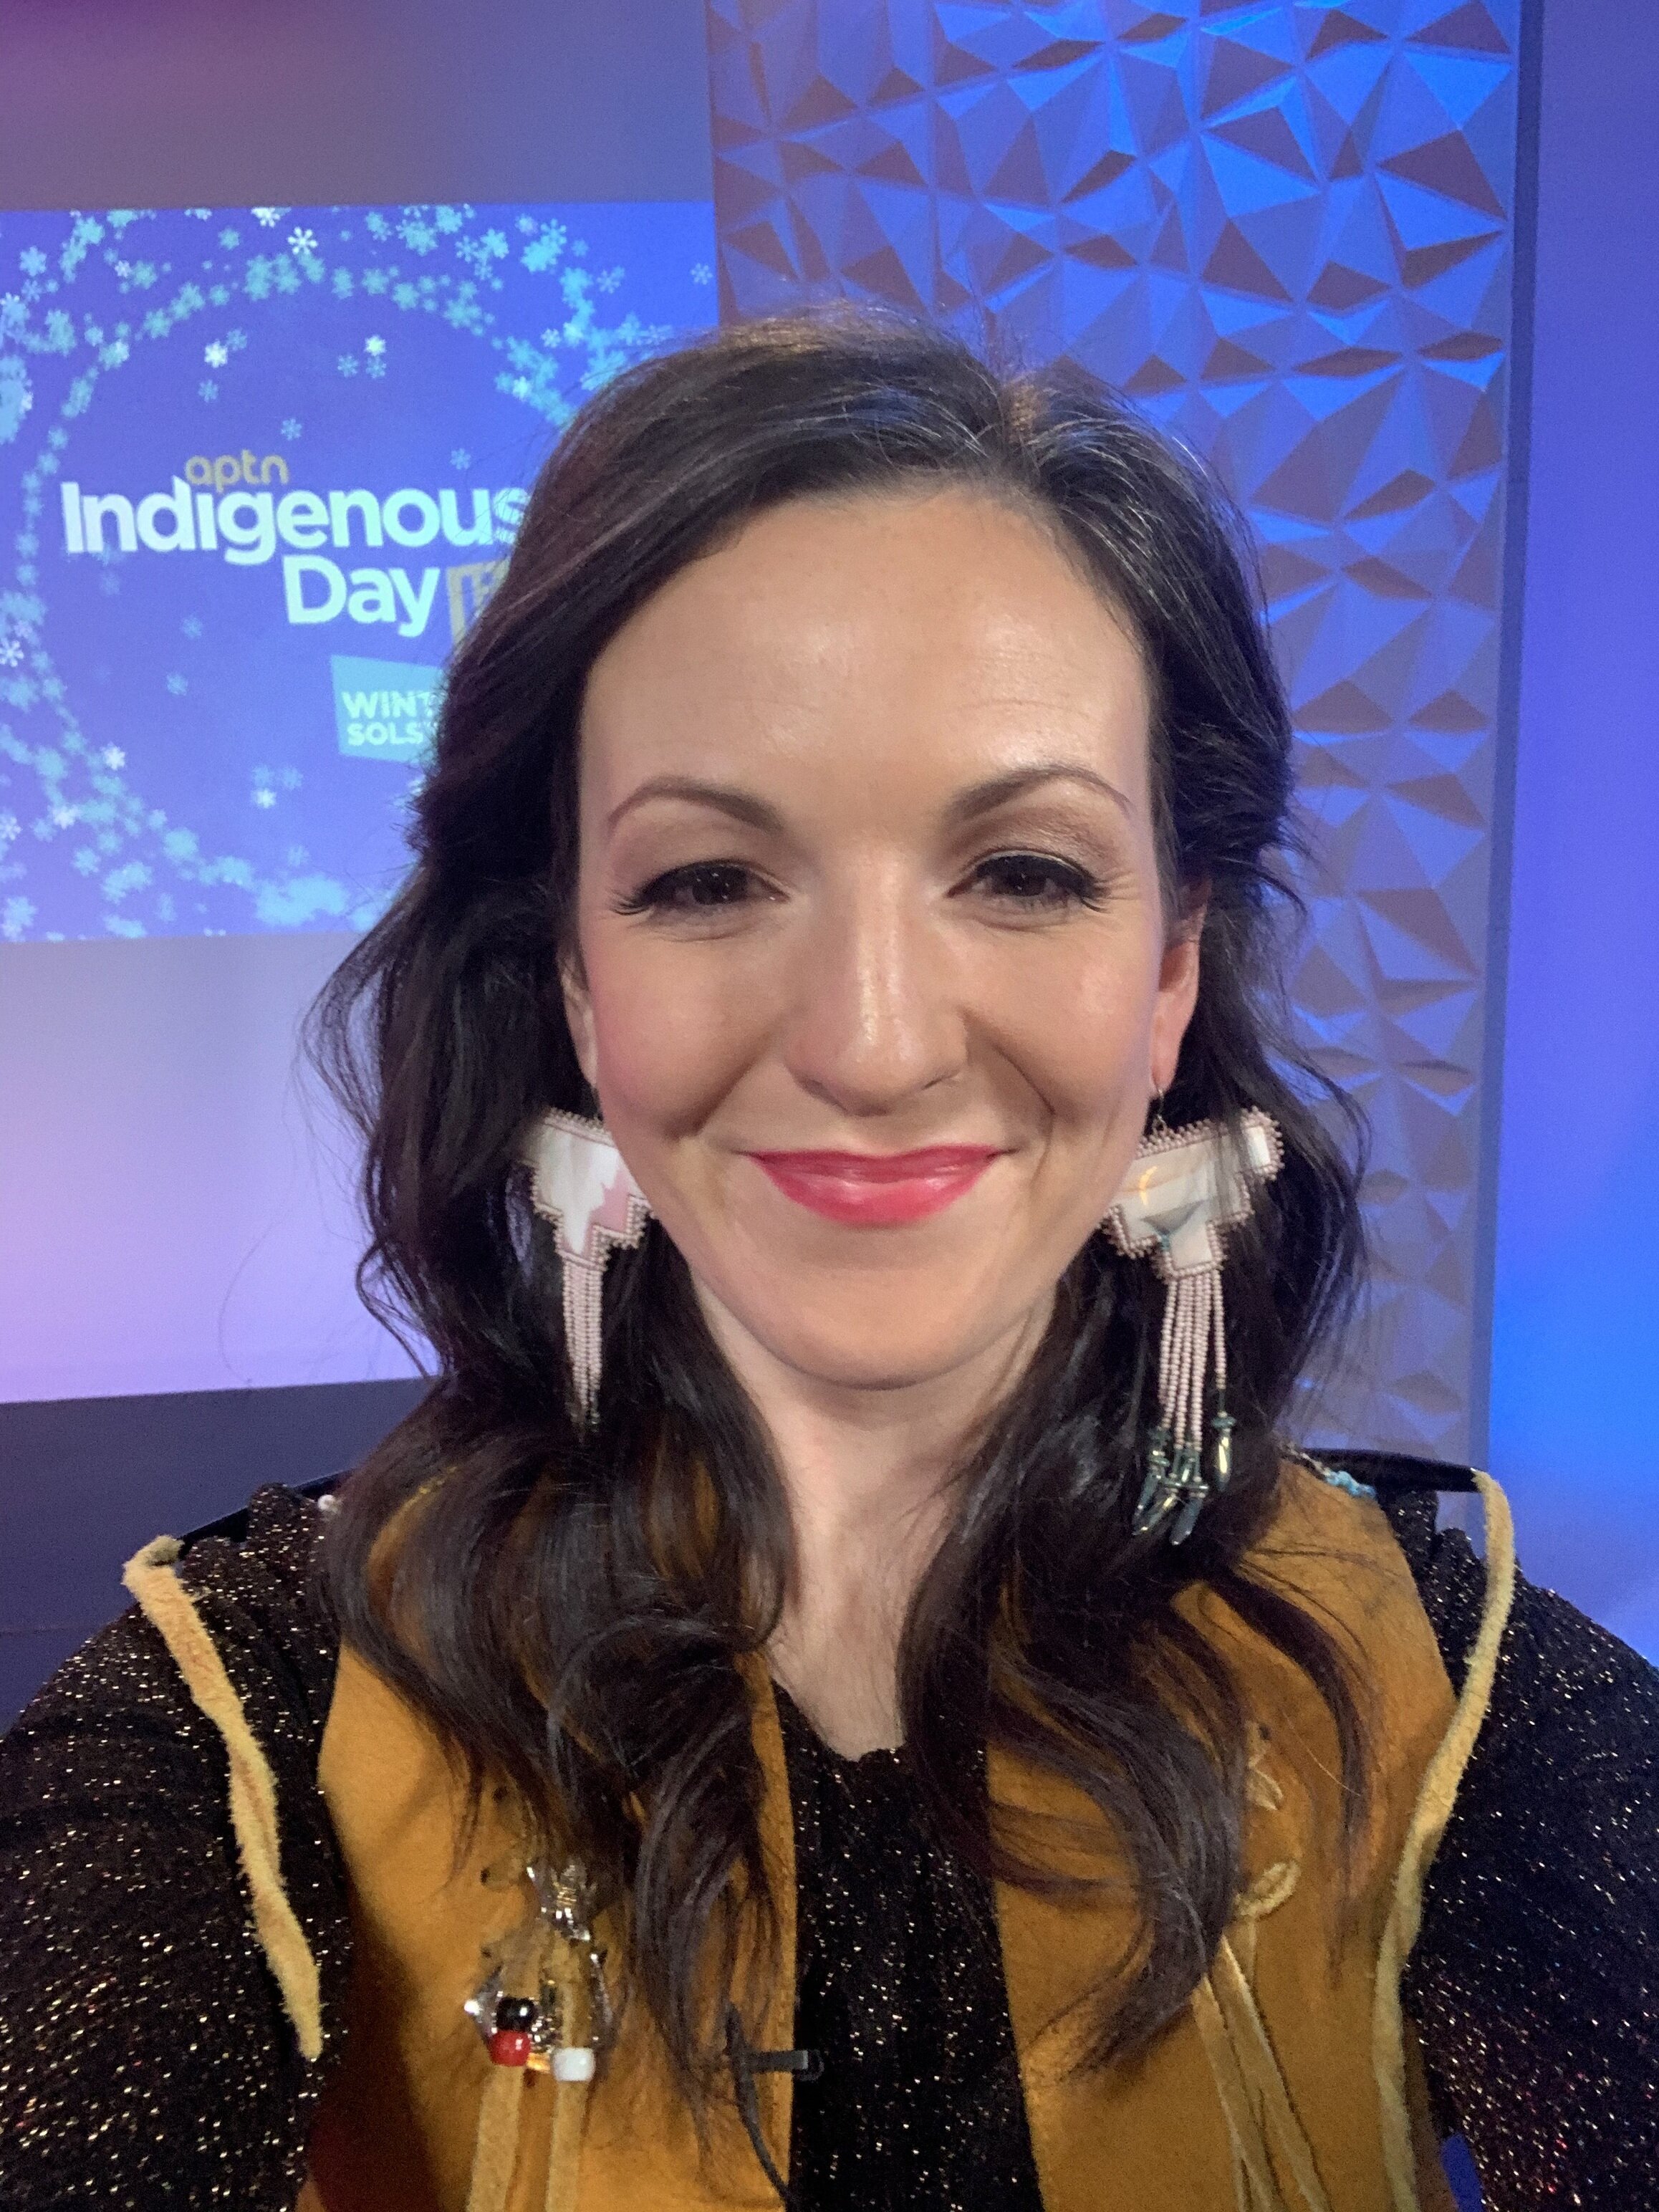  IDL 2020 - Incredible earrings by Brooke Bampton of Twig and Antler 